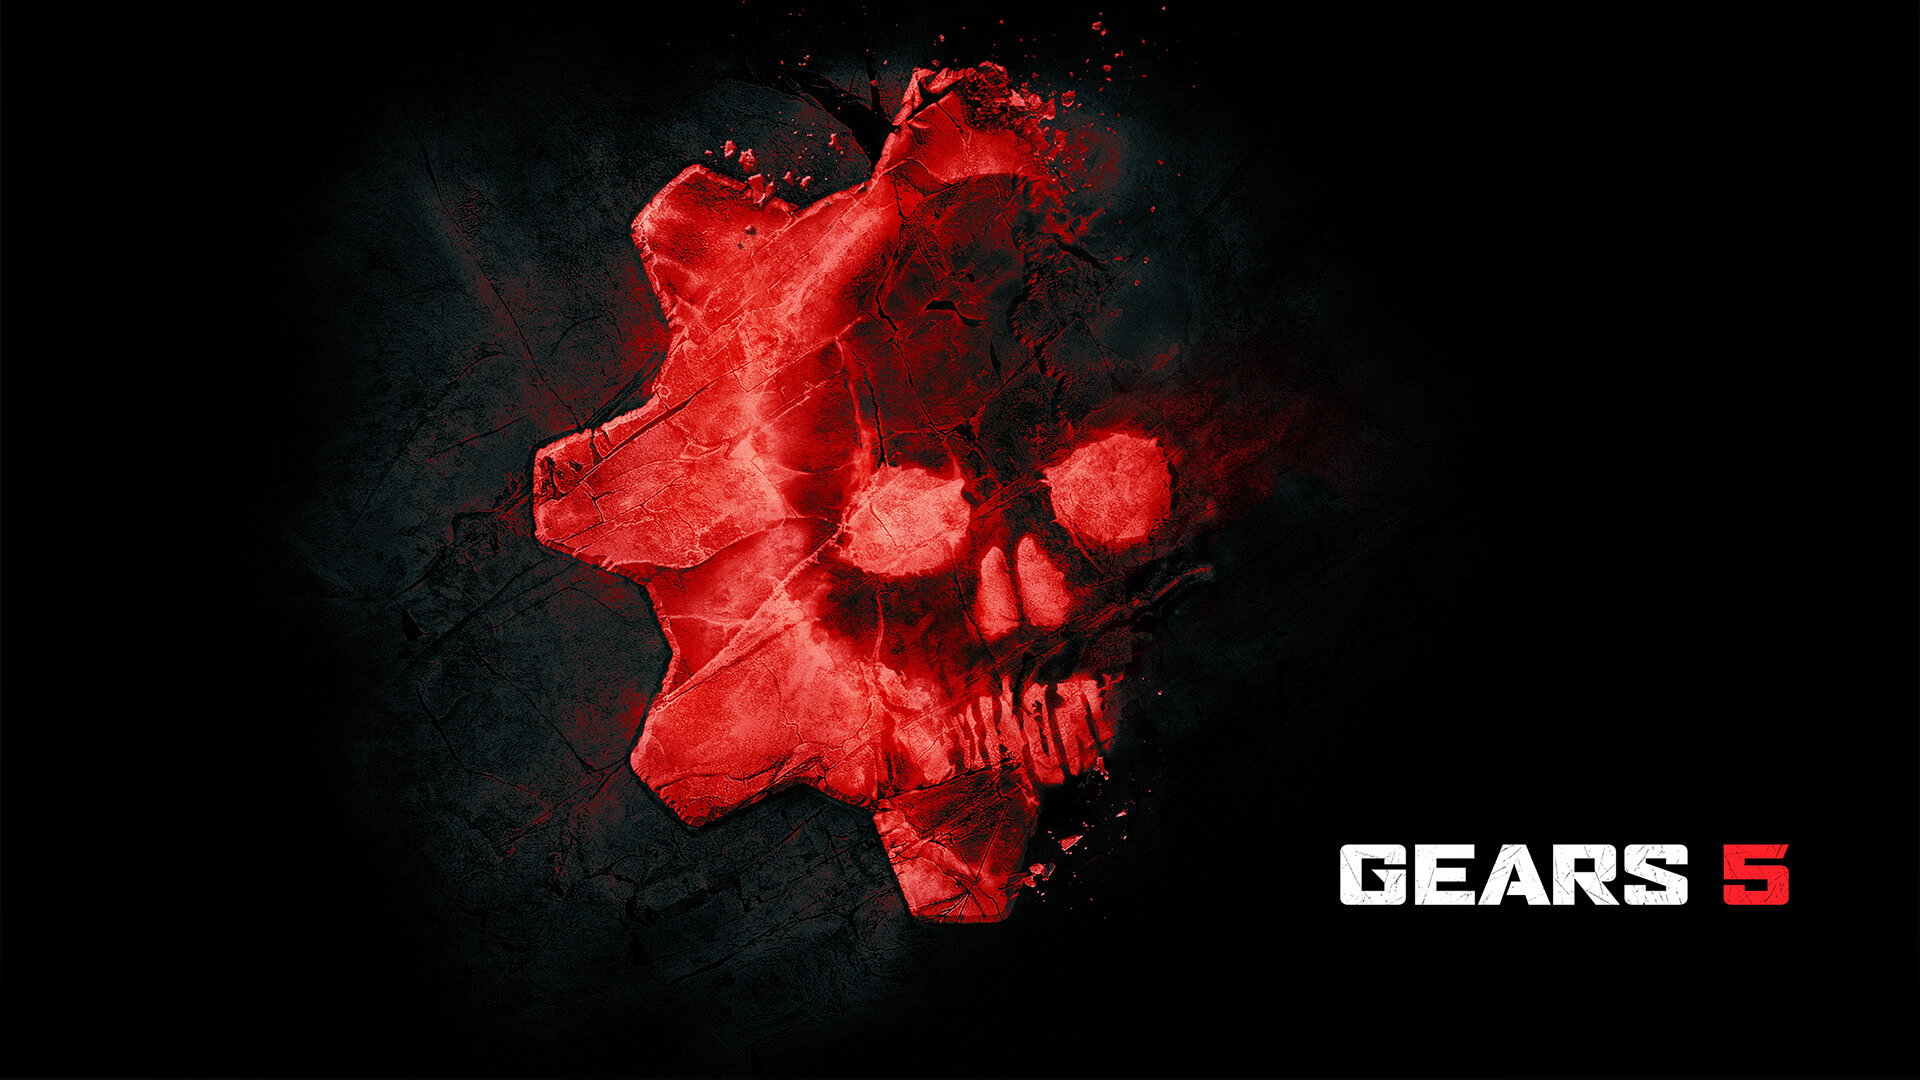 Gears 5 menerima "skor sempurna" dari situs yang mengevaluasi aksesibilitas di video game 3